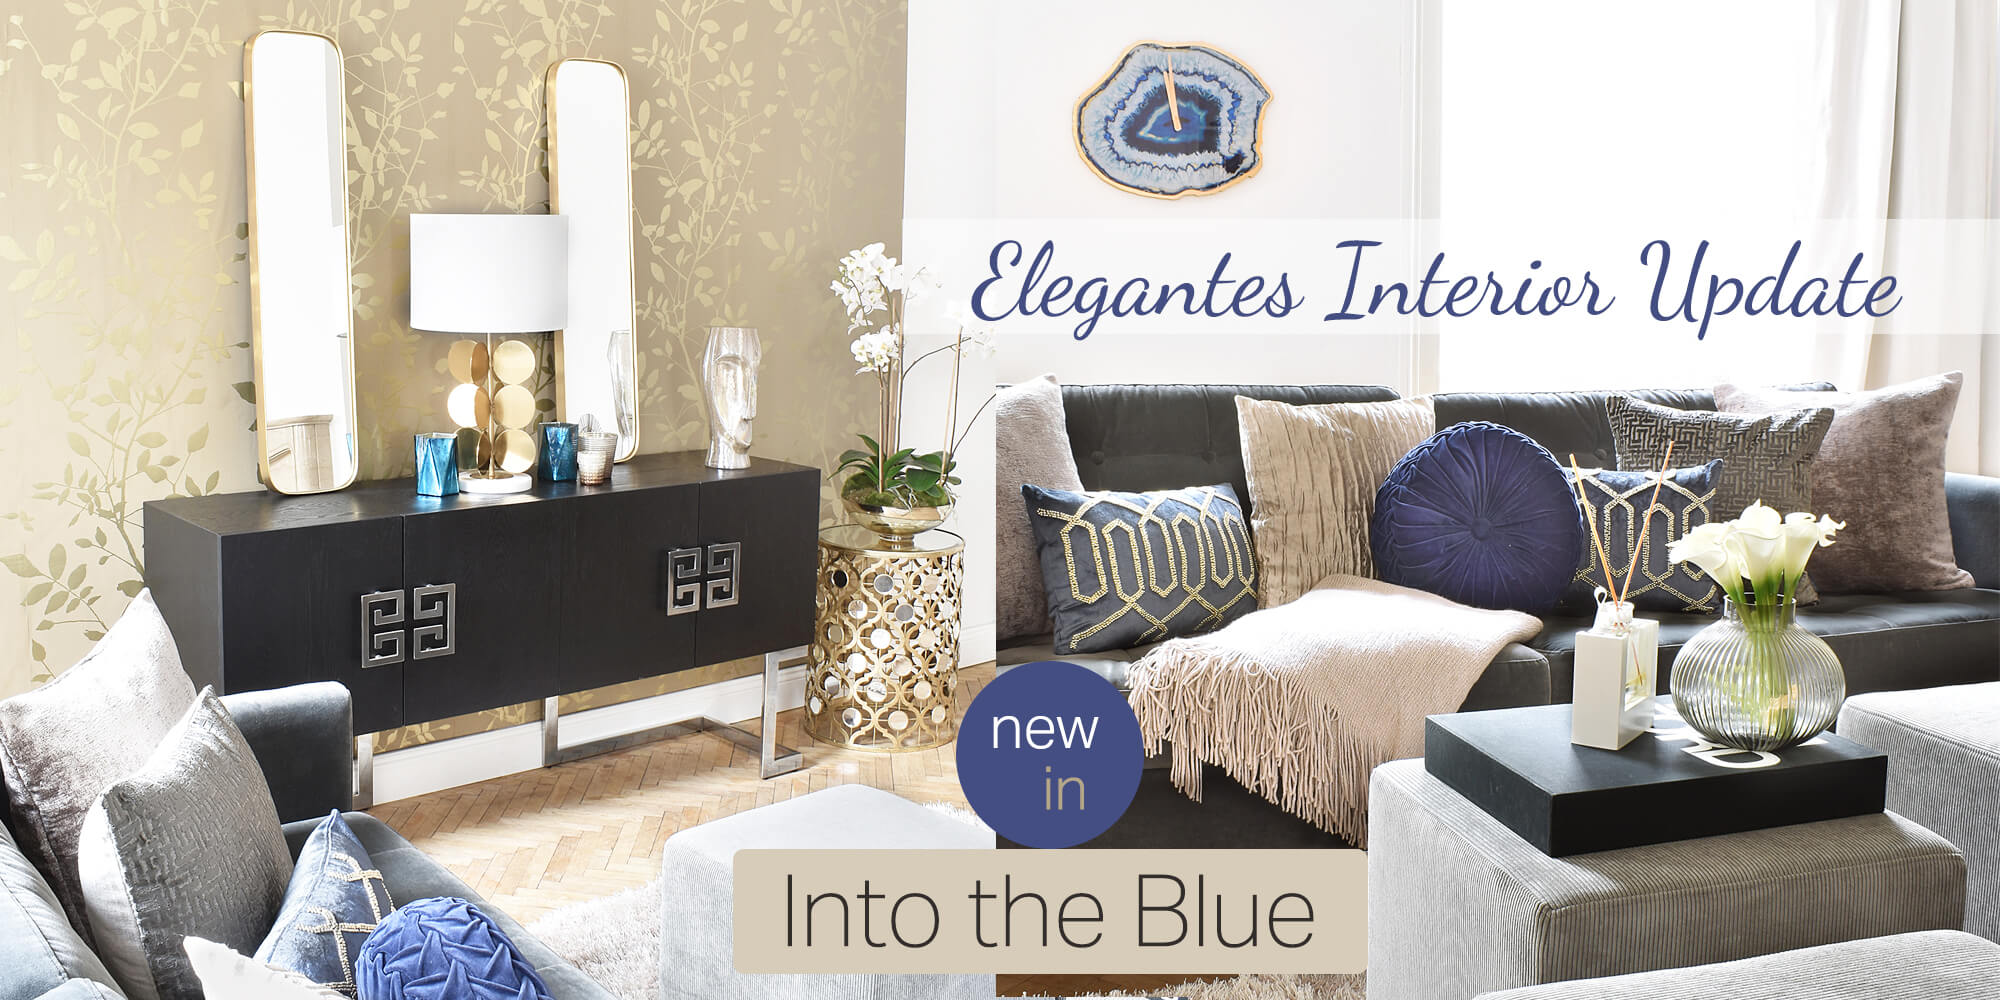 Into the Blue - Elegantes Interior Update